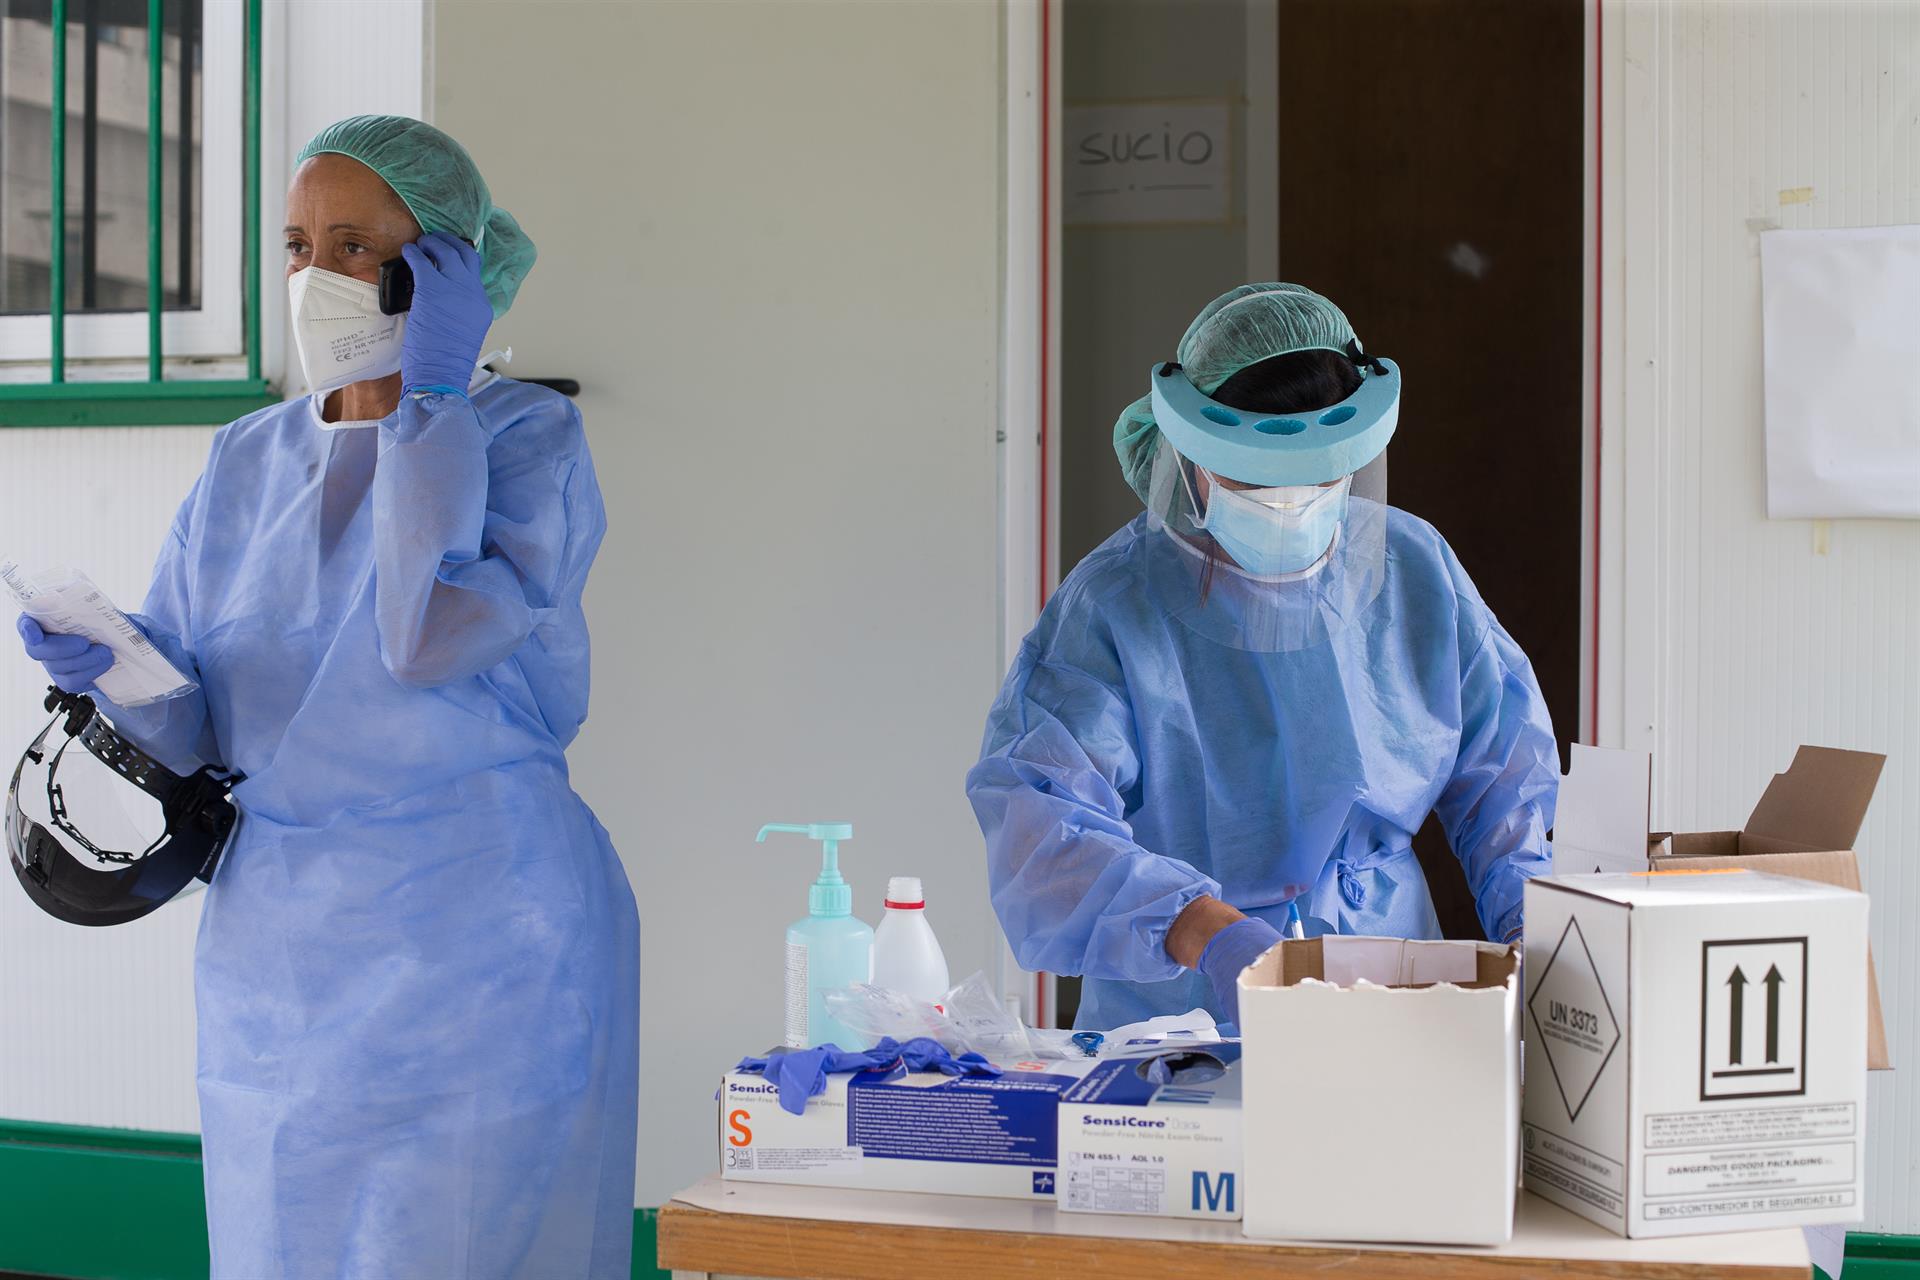 277 contagios y 13 hospitalizados en la provincia elevan la preocupación por el descontrol de la pandemia